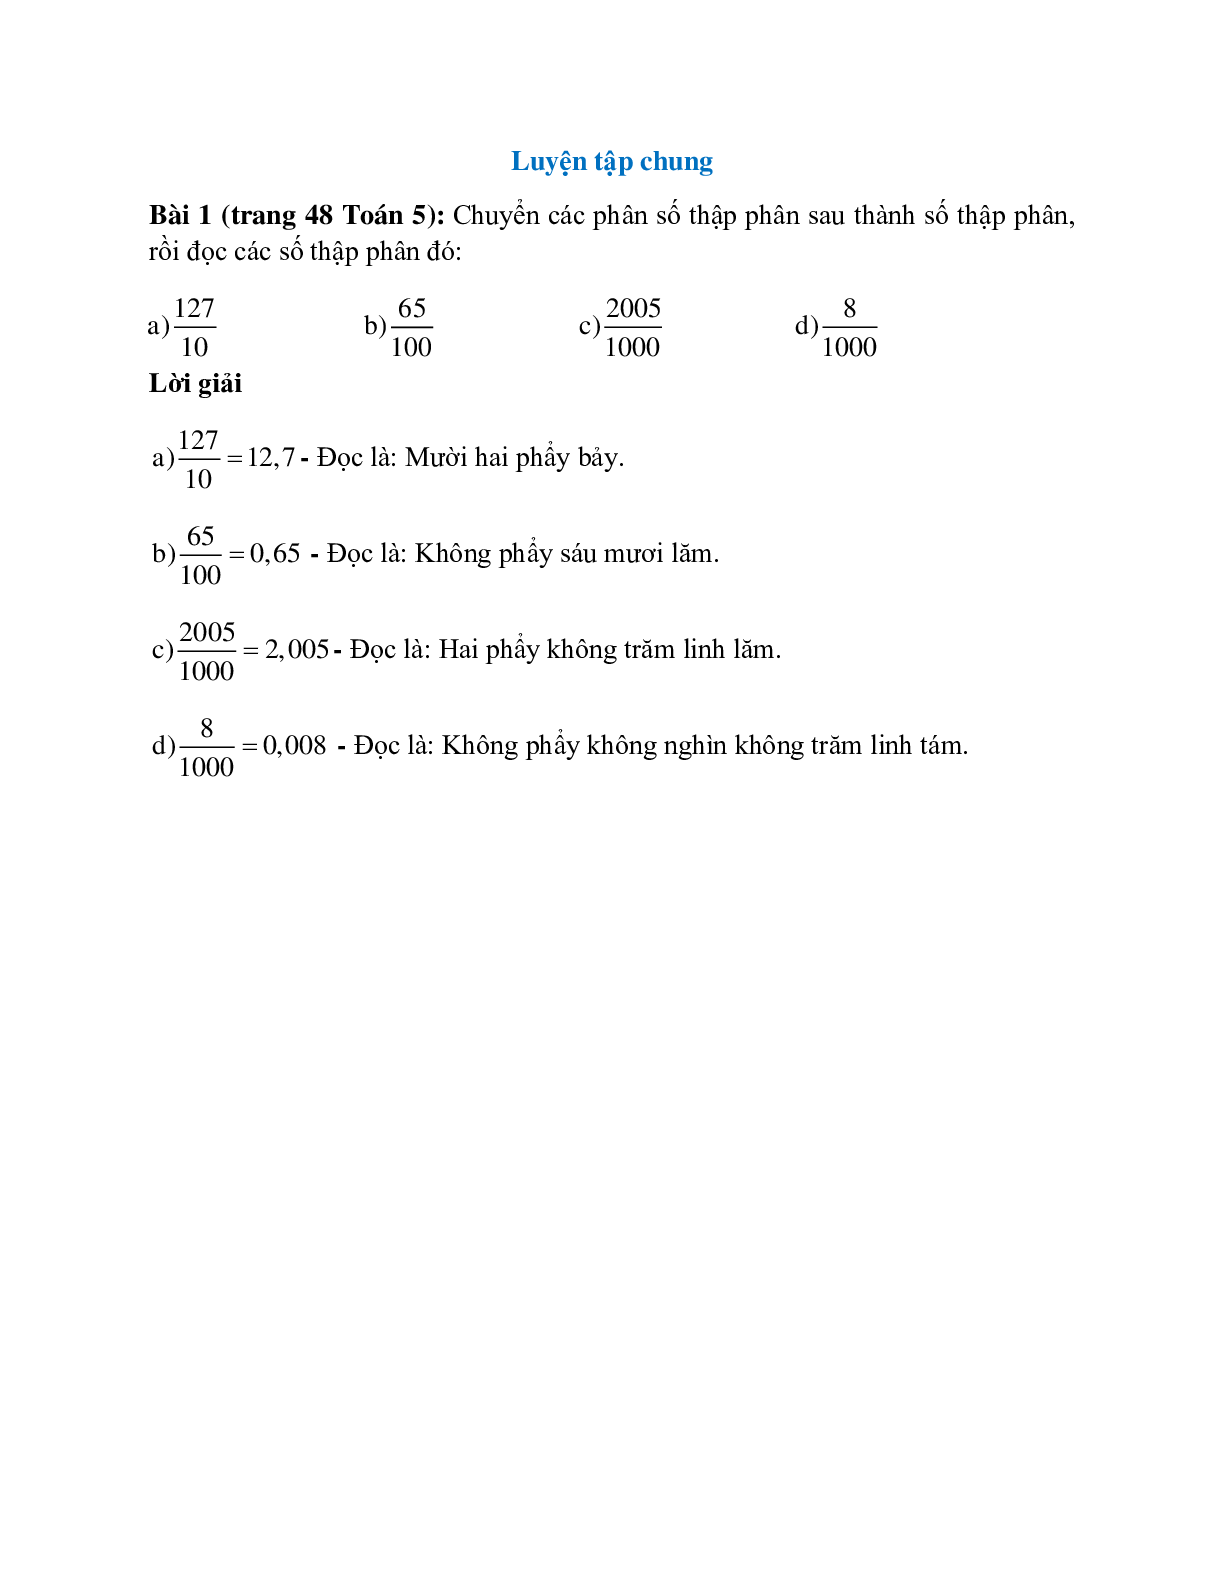 Chuyển các phân số thập phân sau thành số thập phân, rồi đọc các số thập phân đó (trang 1)